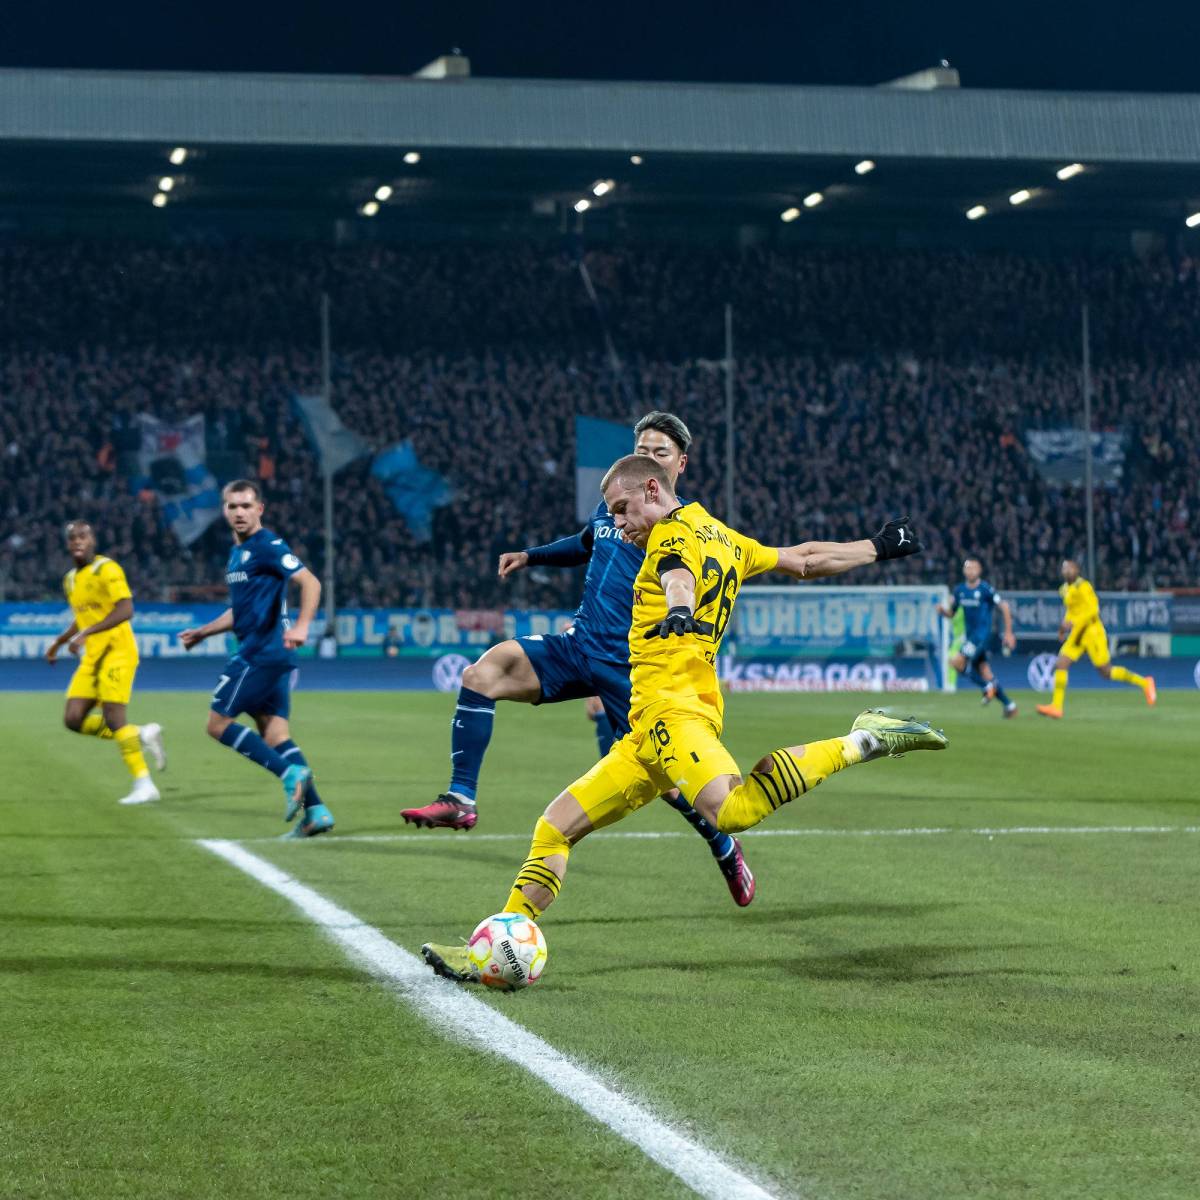 Bochum – Dortmund: Als die Fans DAS sehen, sind sie schockiert – „Ist ja grauenhaft“